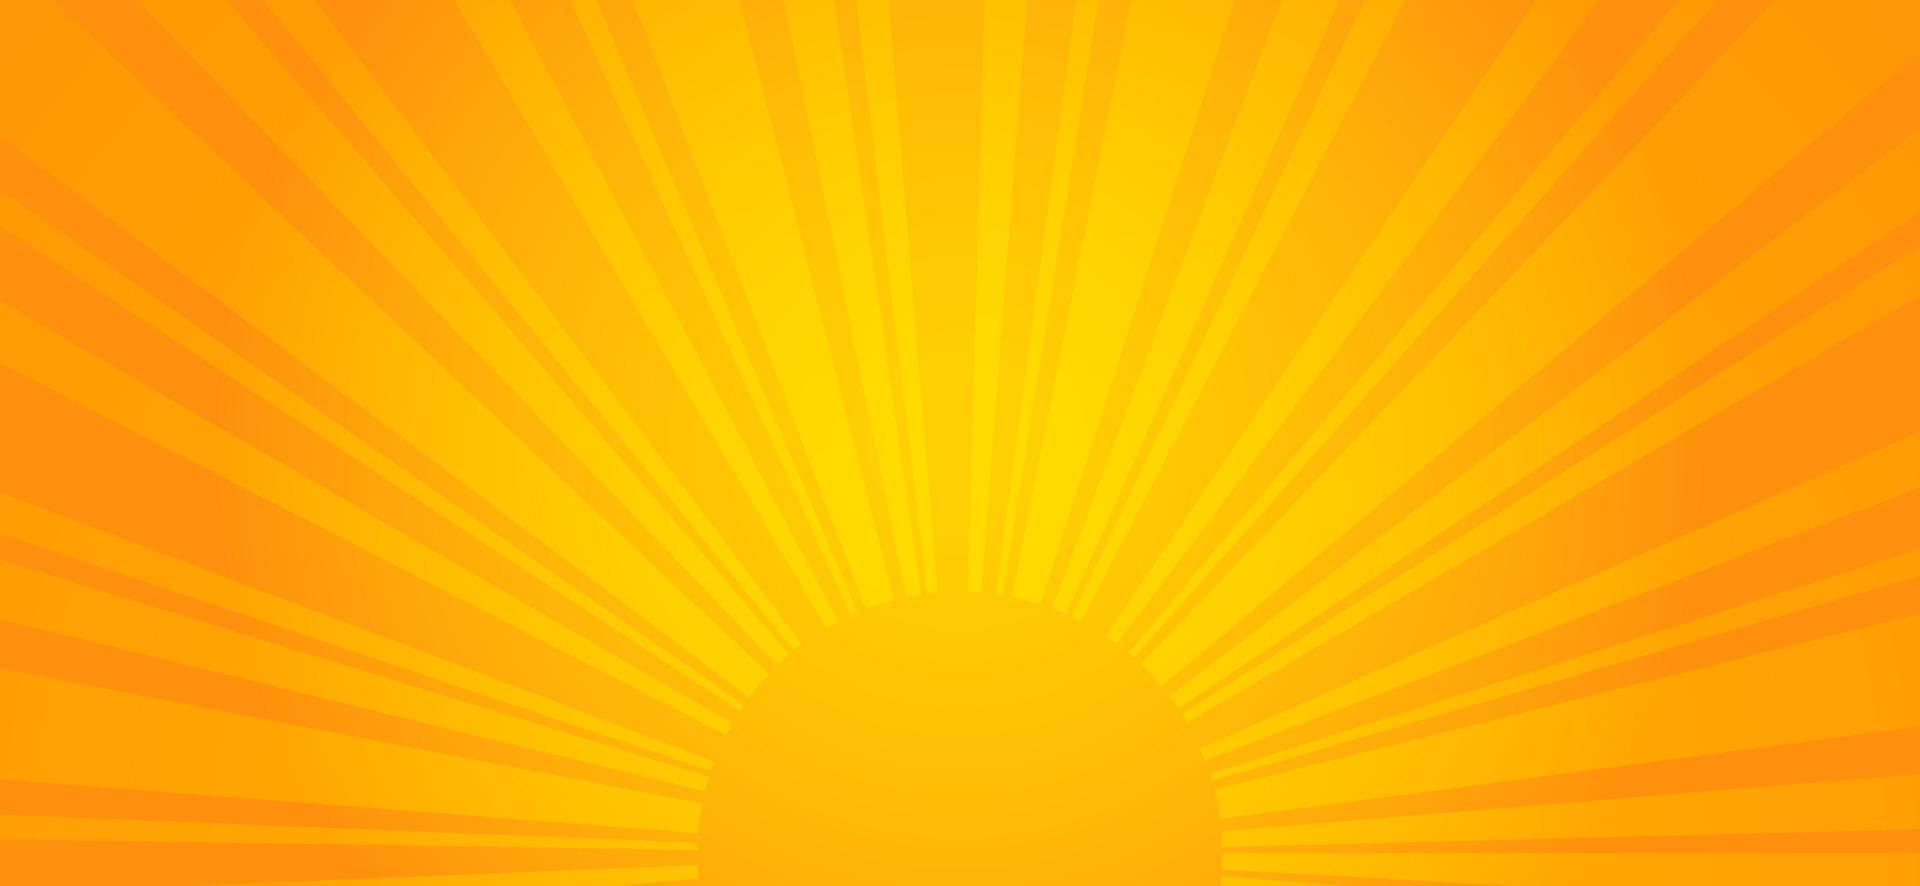 fundo laranja do nascer do sol. ilustração em vetor de energia solar.